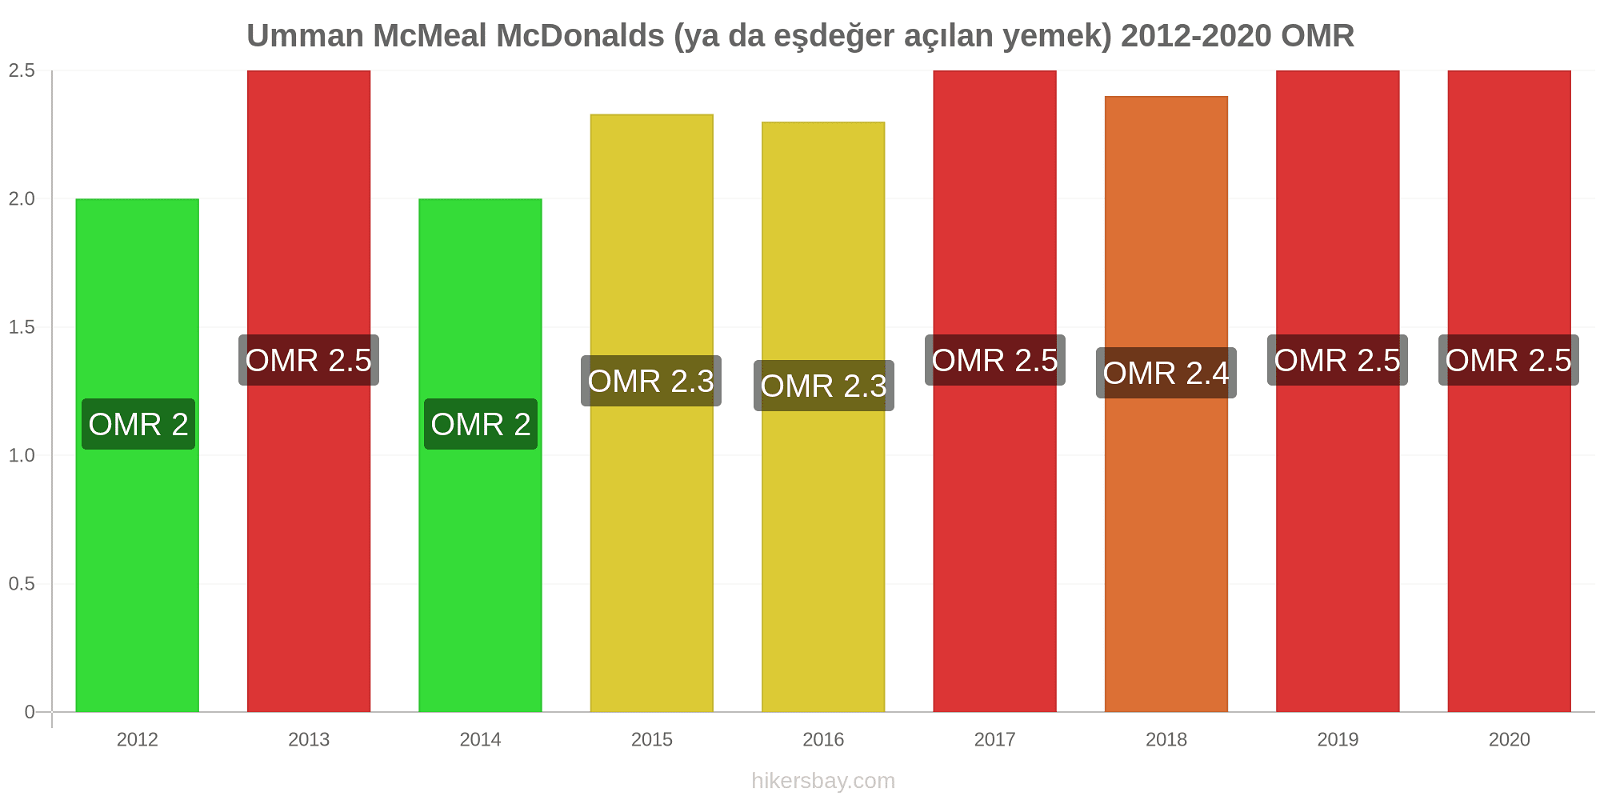 Umman fiyat değişiklikleri McMeal McDonalds (ya da eşdeğer açılan yemek) hikersbay.com